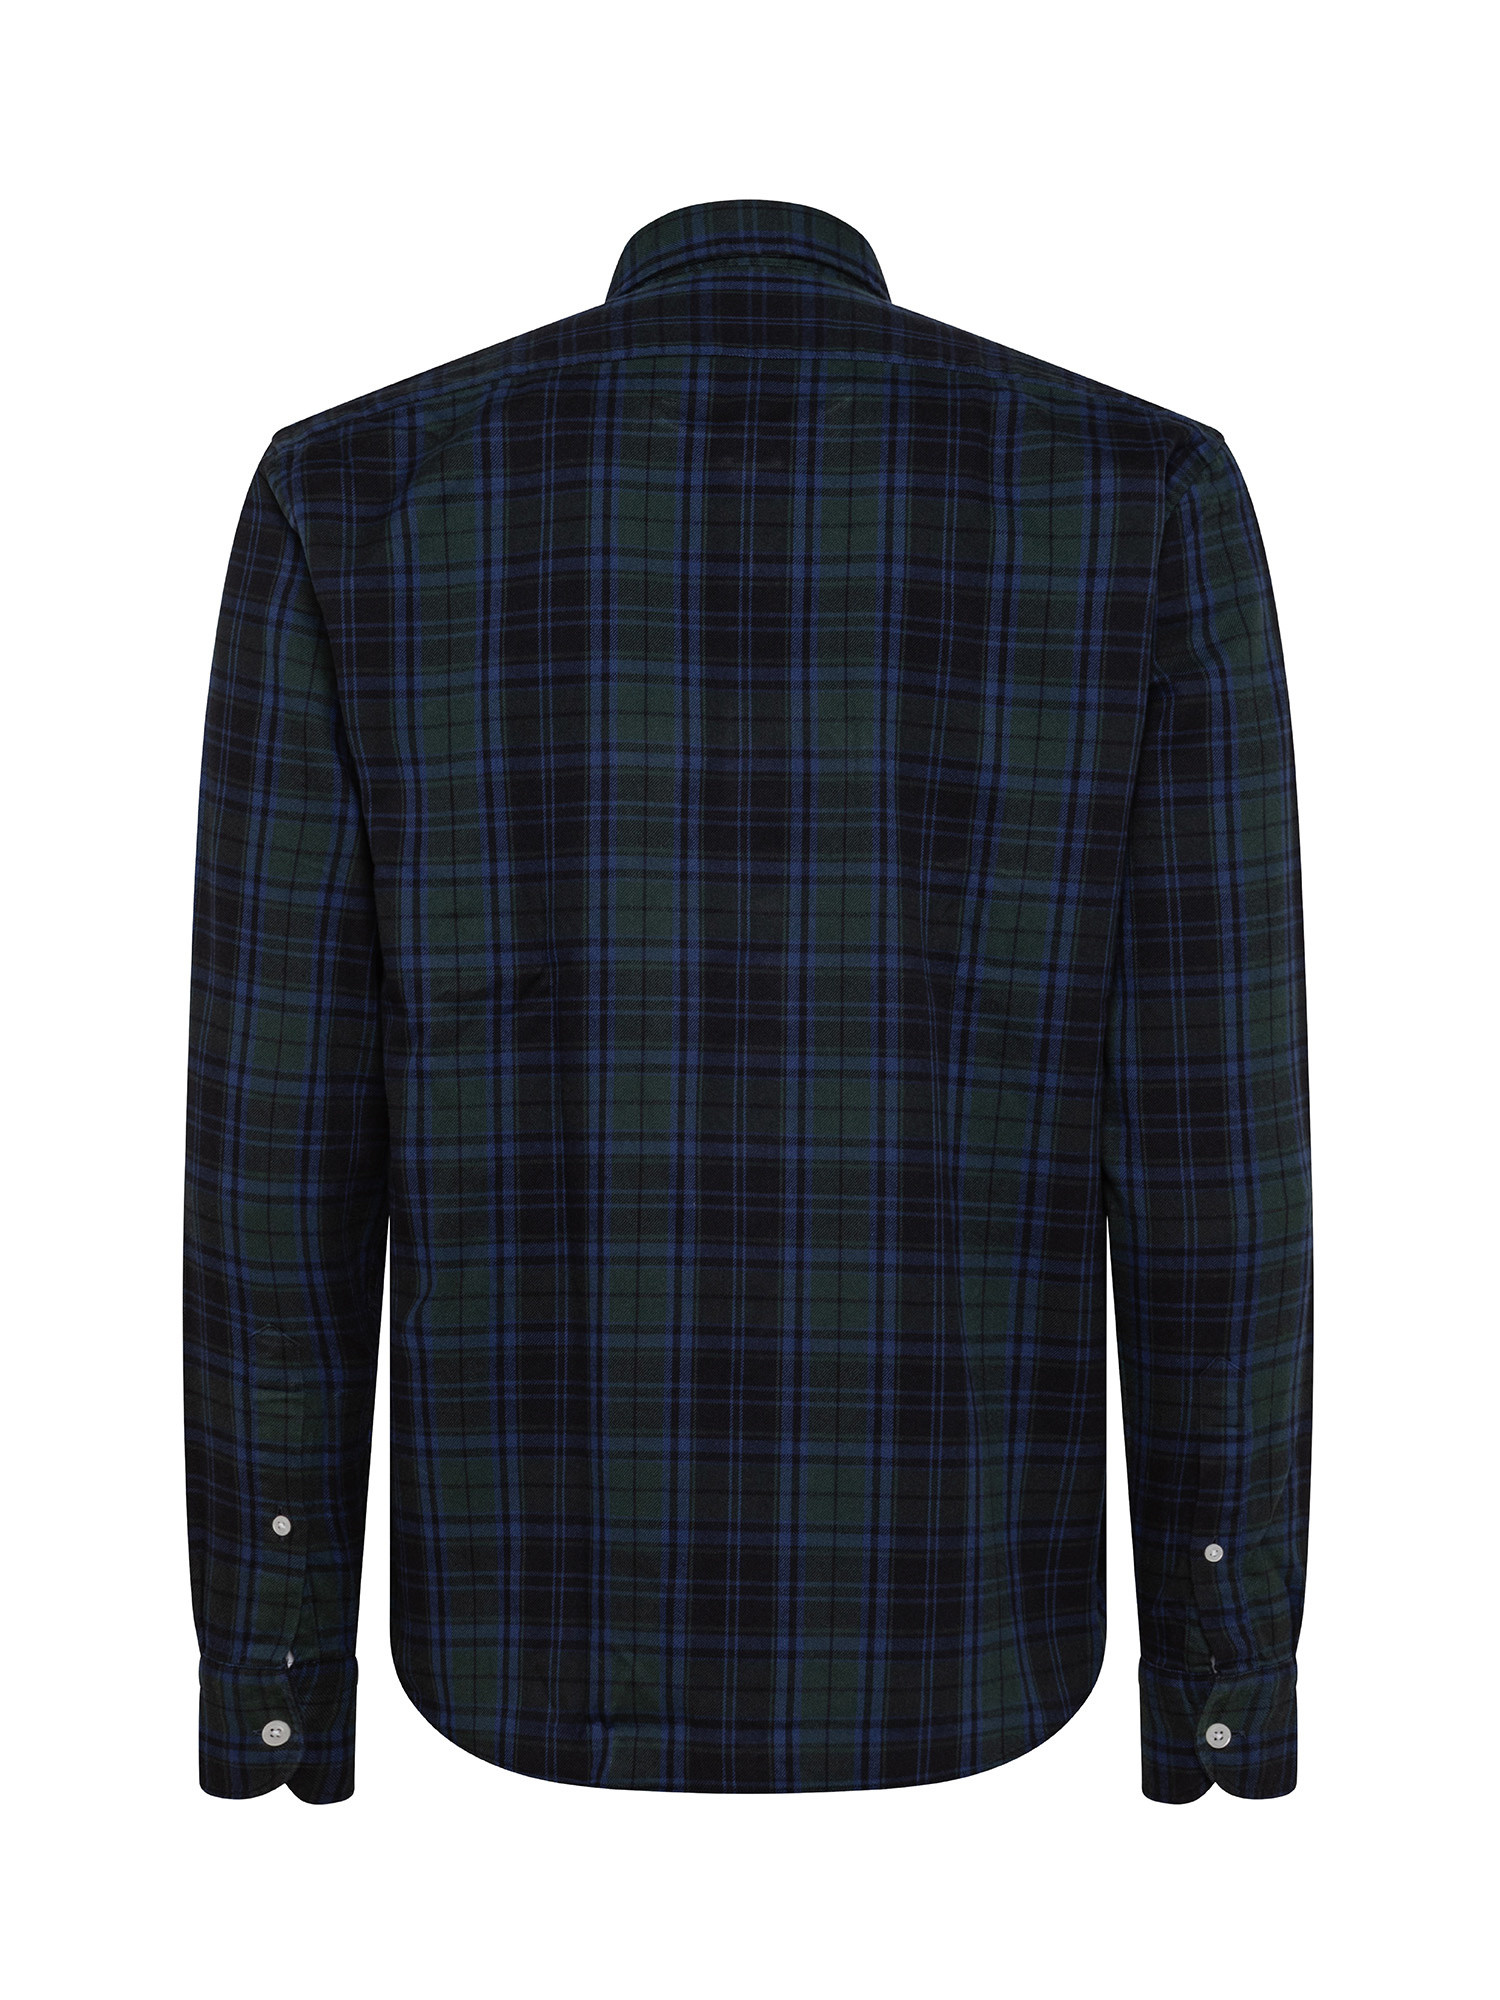 Camicia tailor fit in morbida flanella di cotone organico, Blu, large image number 1